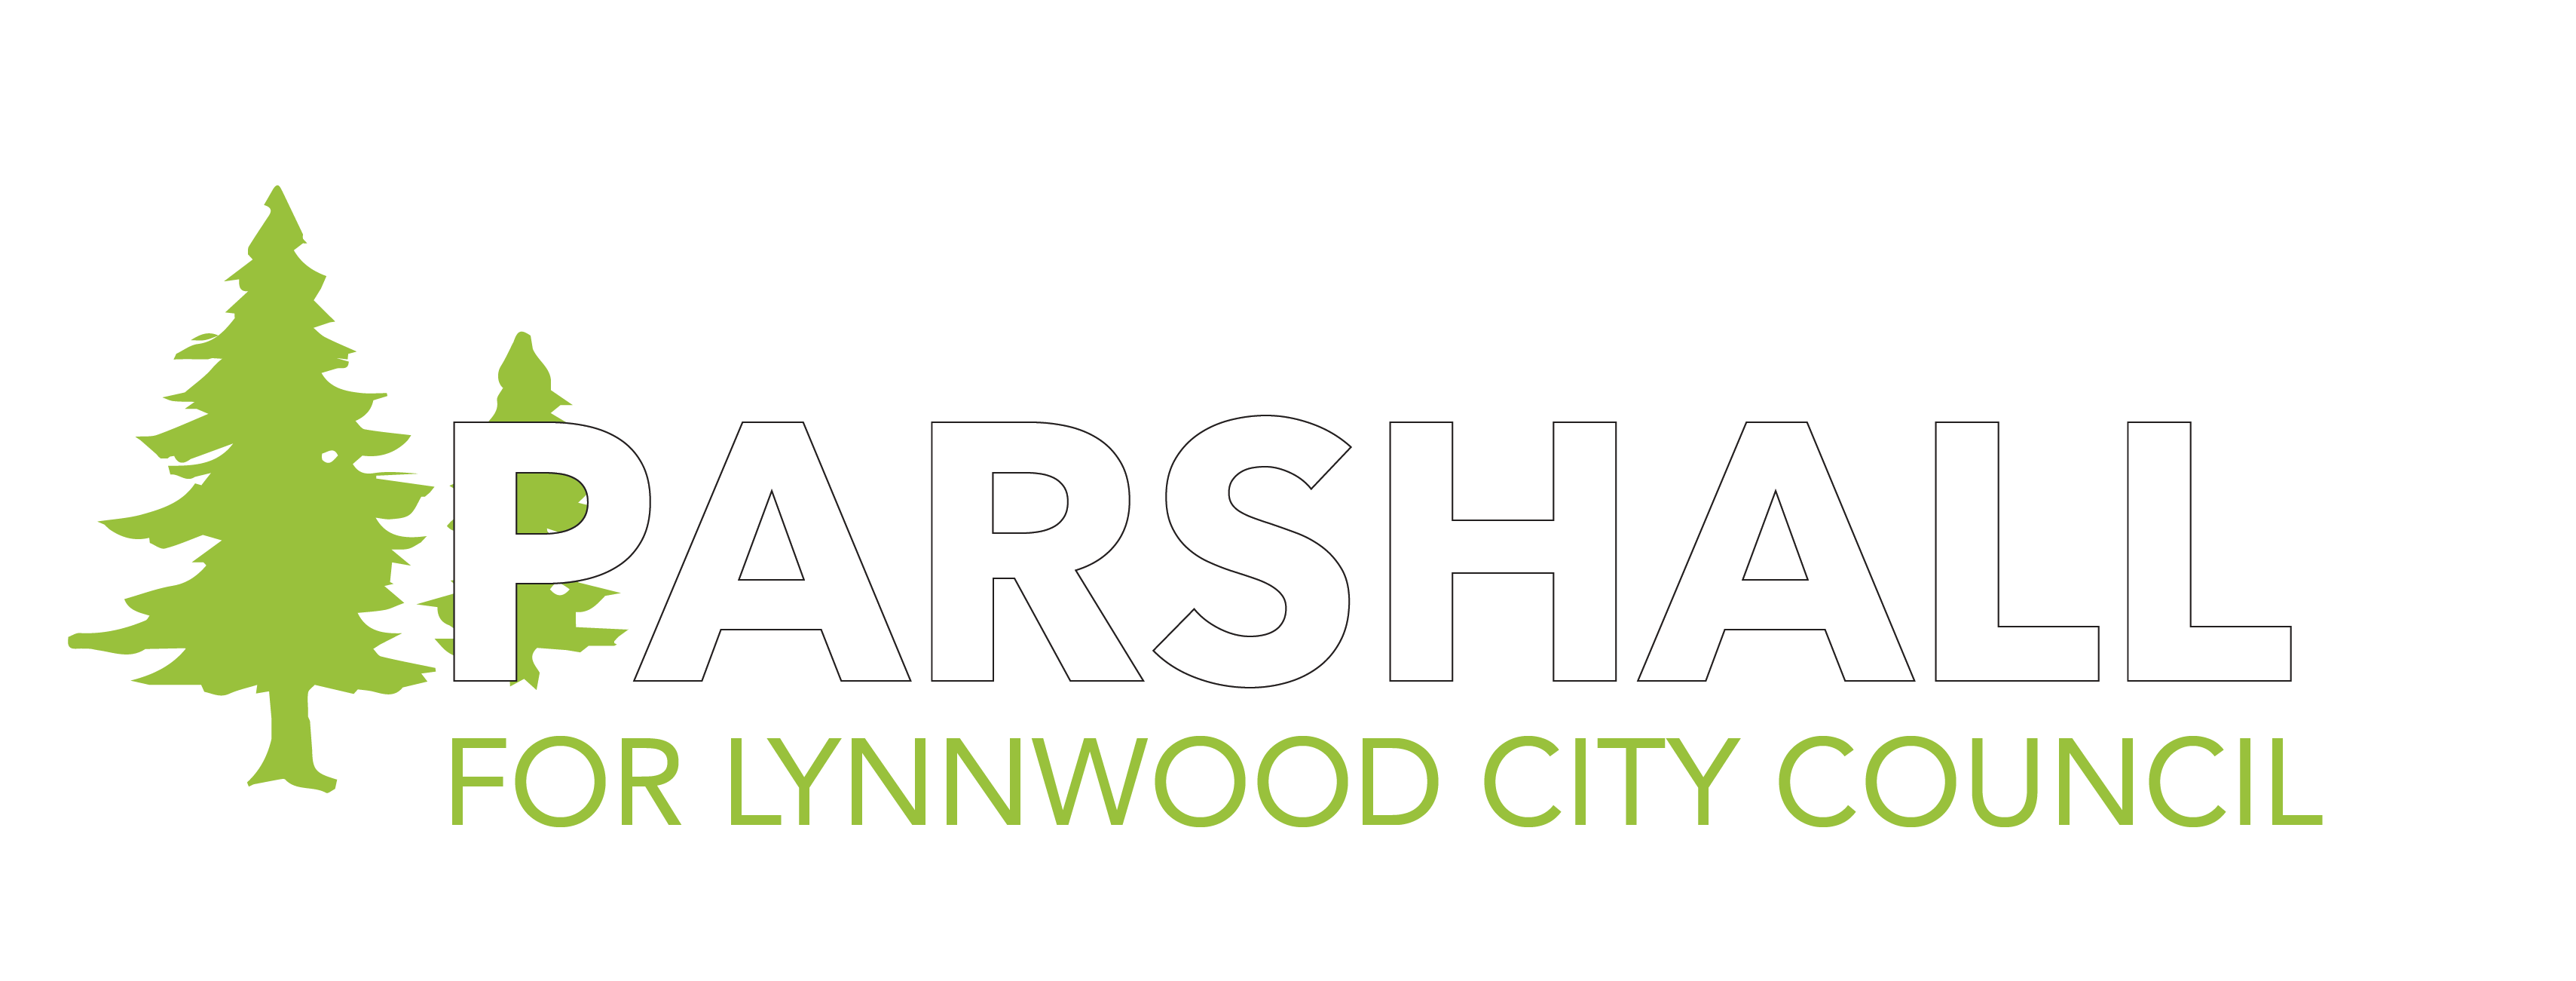 David Parshall horizontal logo<br />
